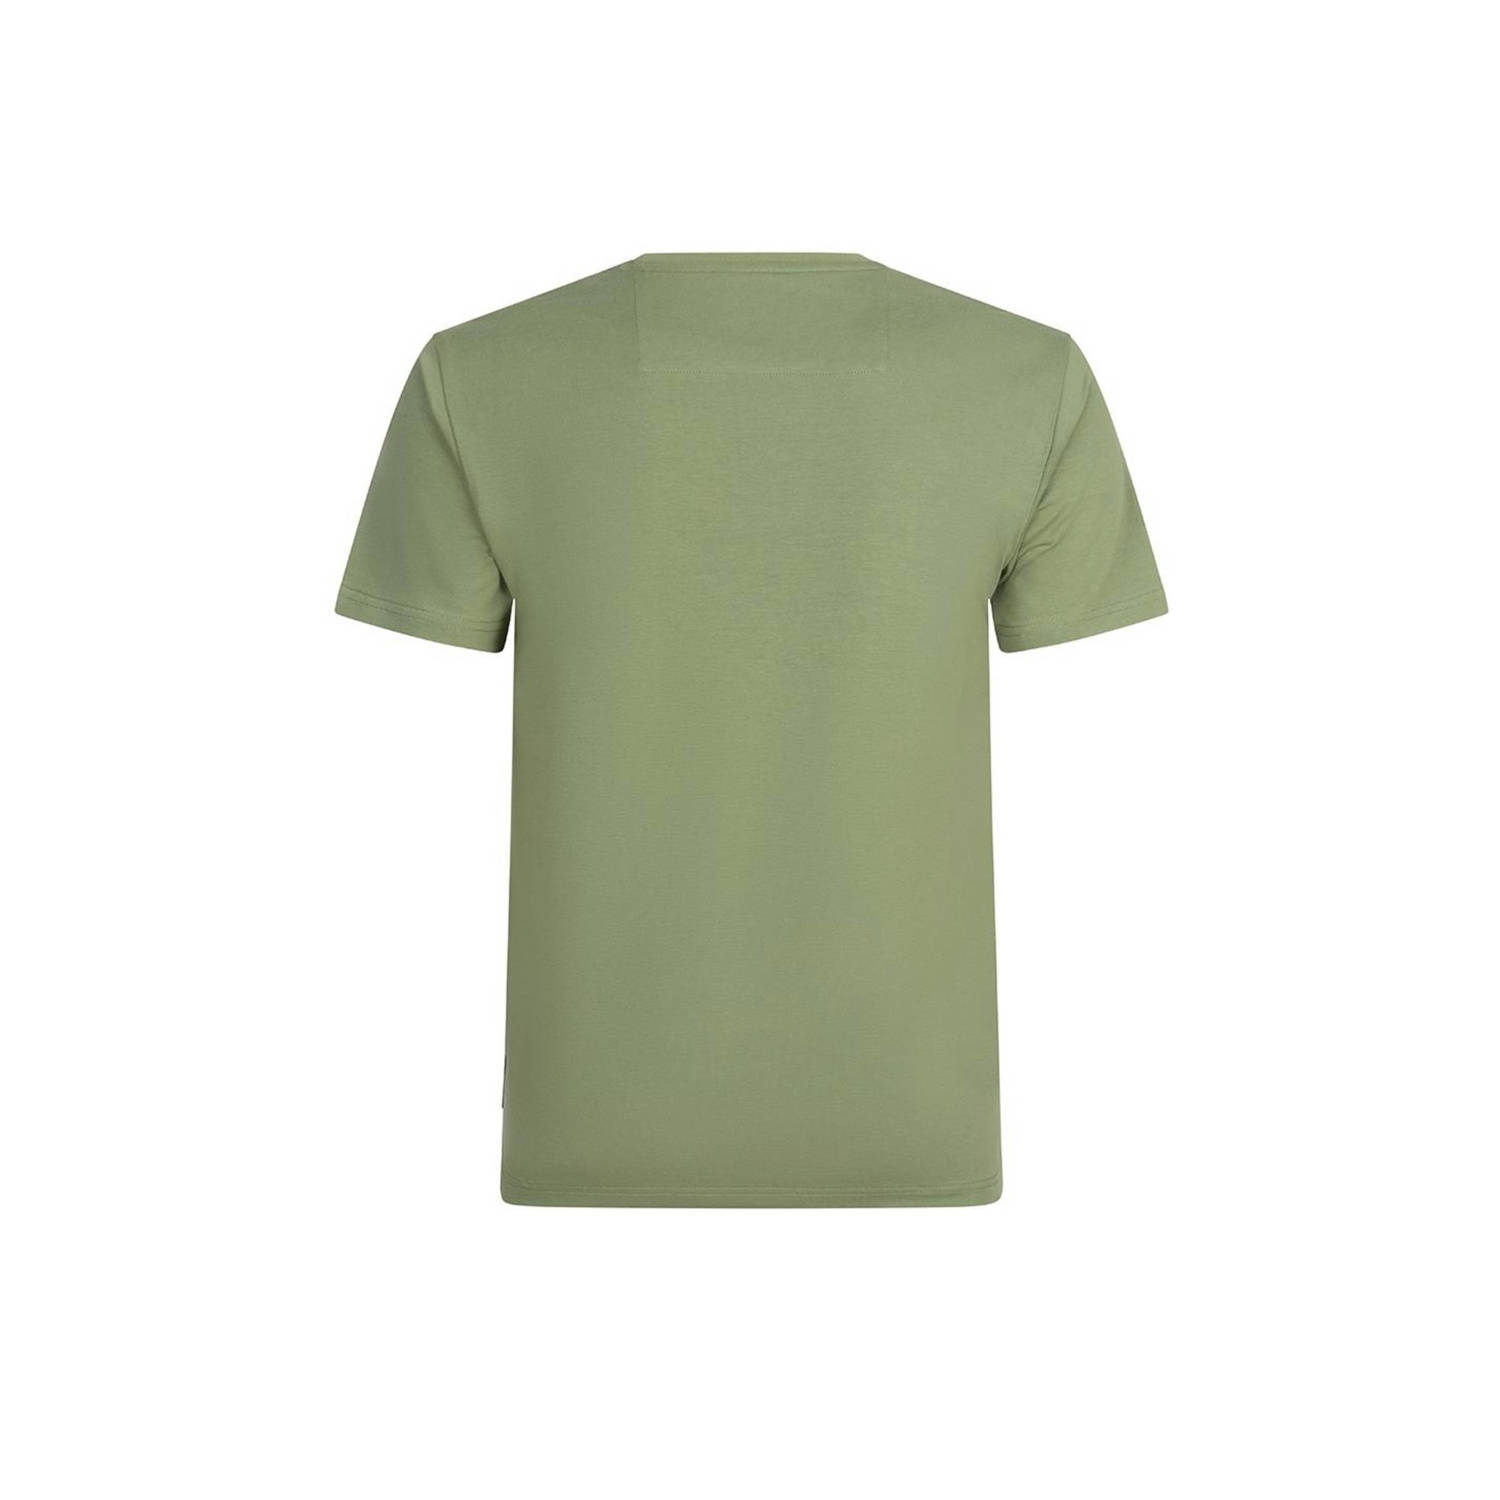 Rellix T-shirt groen